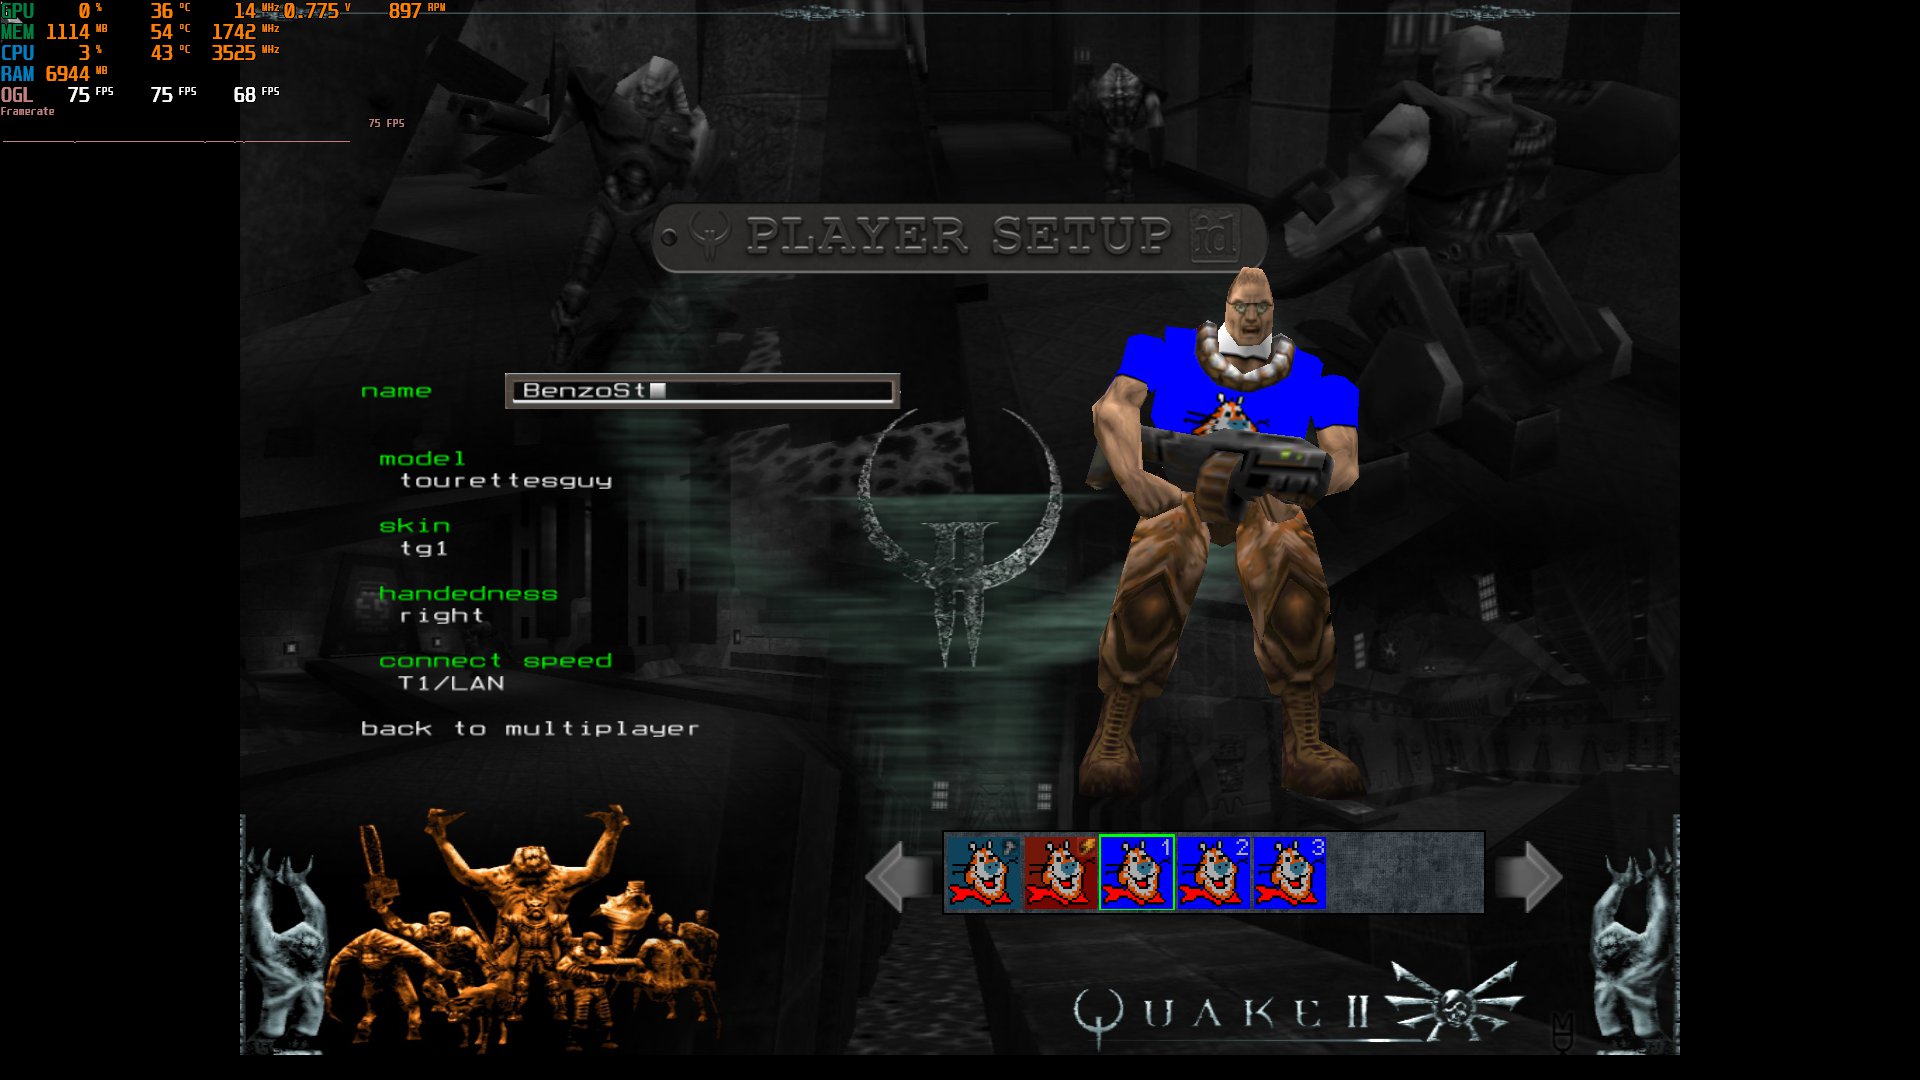 60% Quake II on